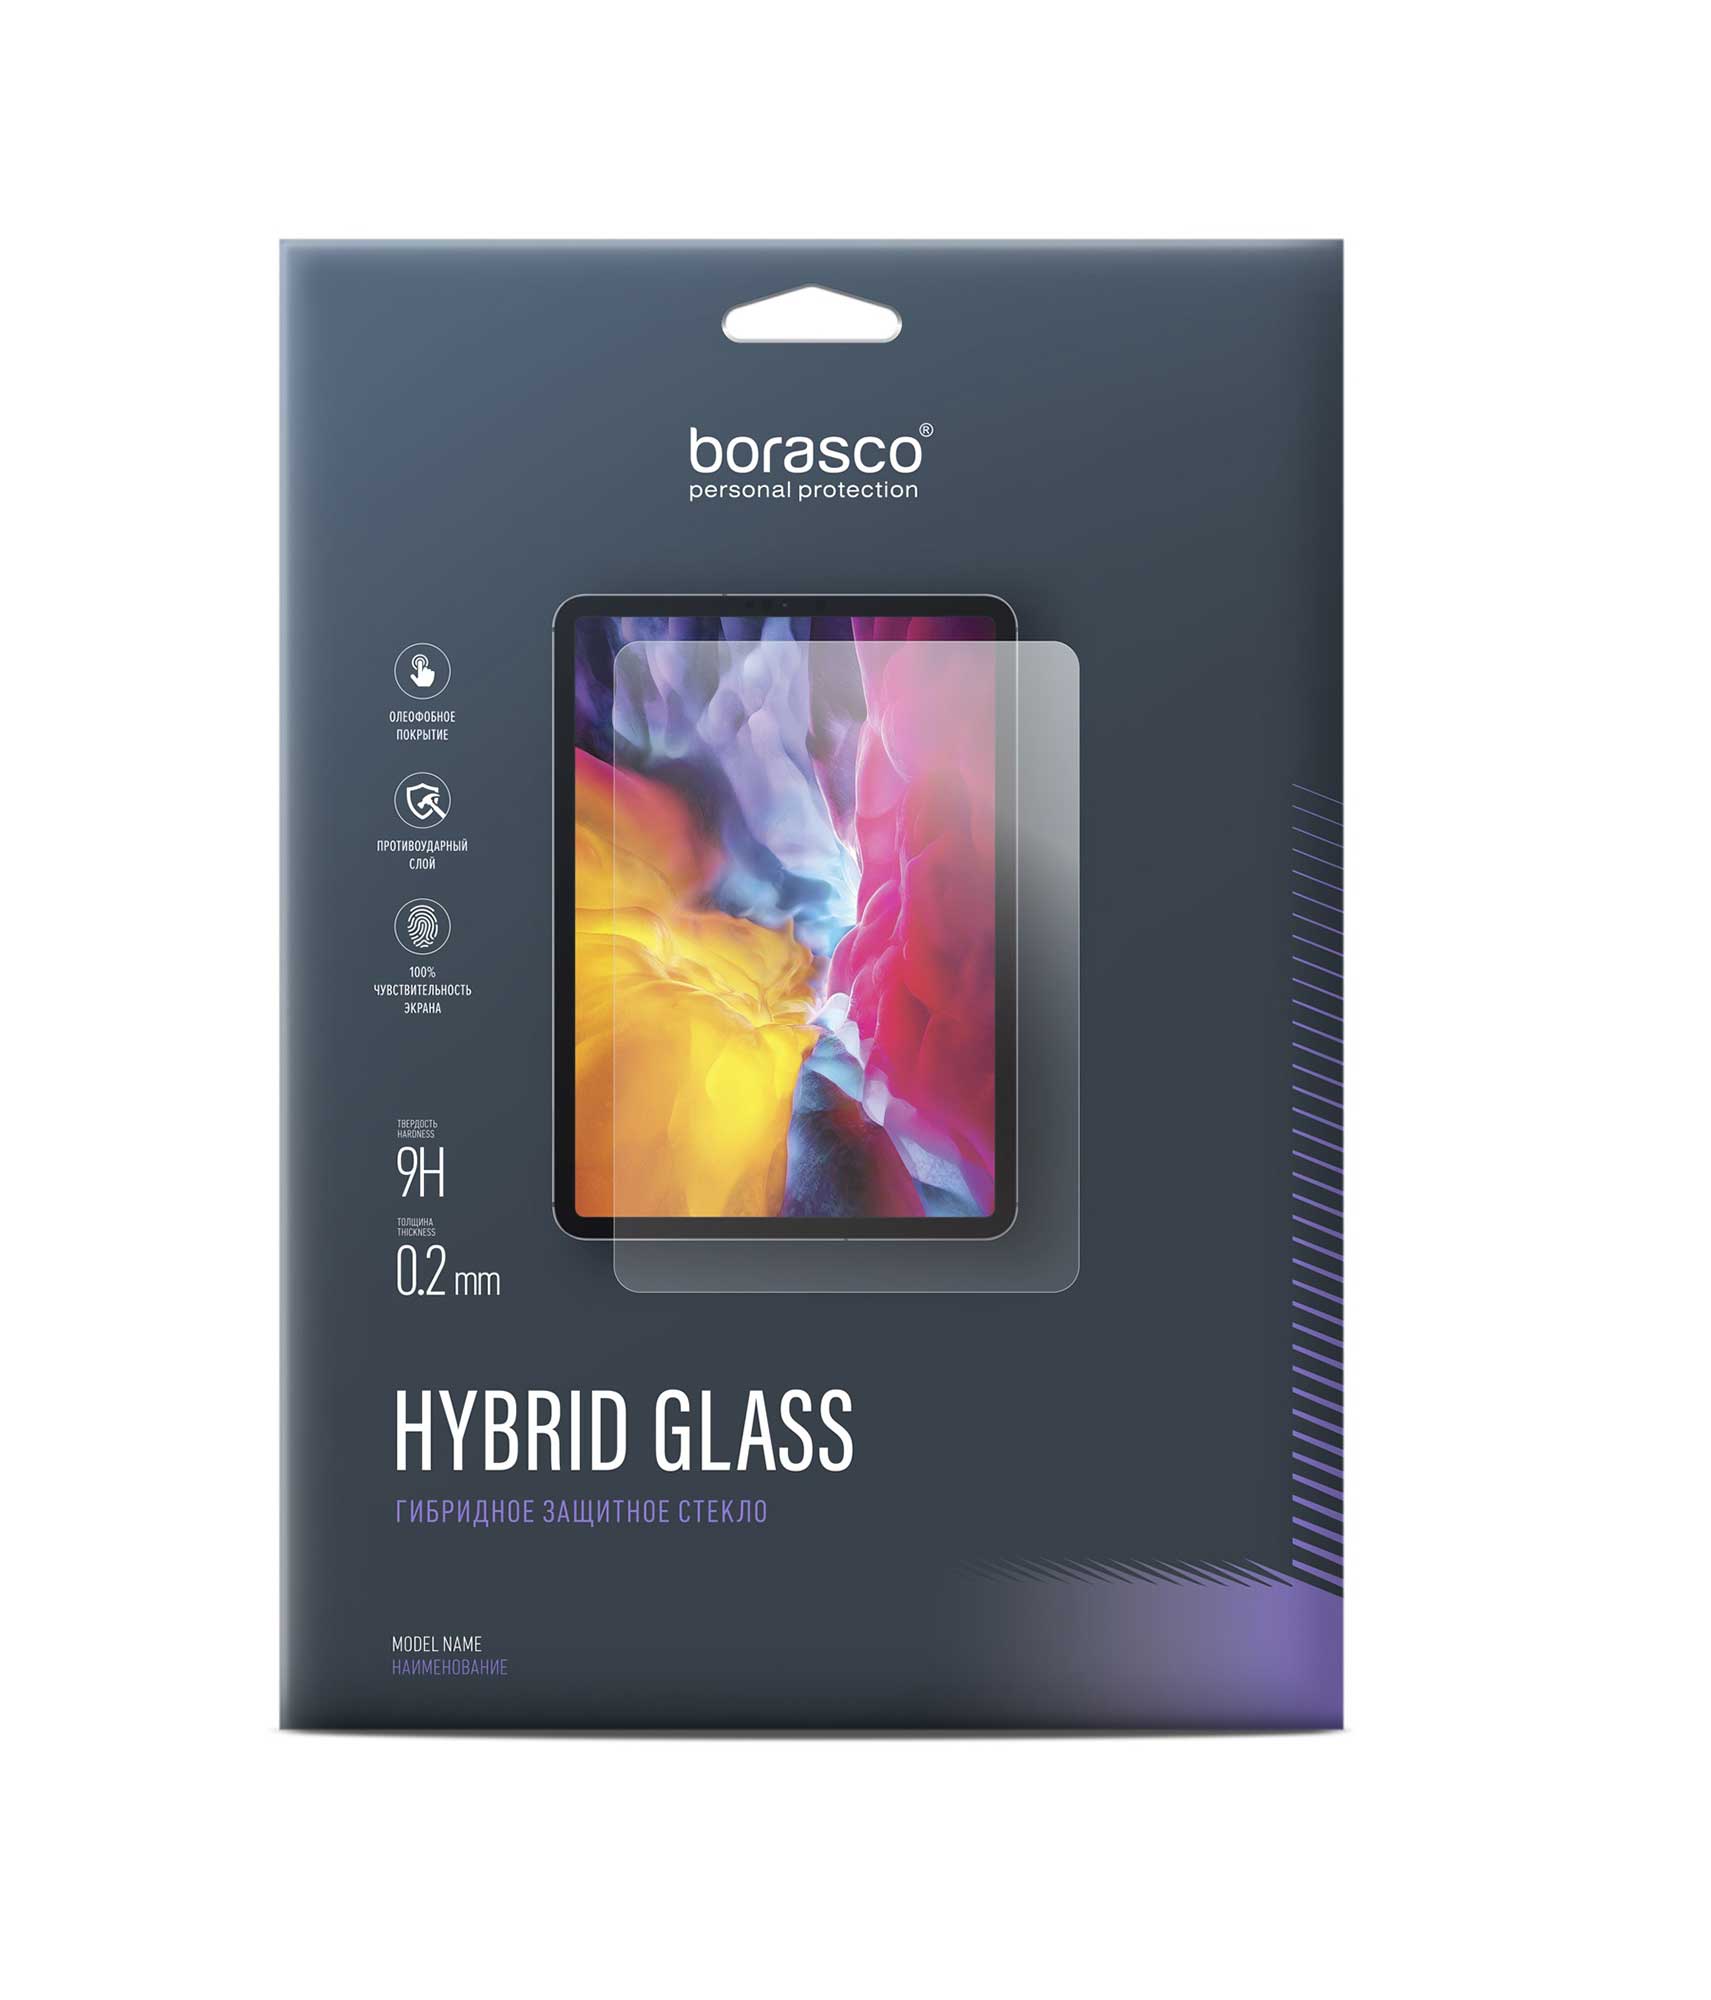 Защитное стекло Hybrid Glass для Apple iPad Pro 11 (2021) защитное стекло для ipad pro 11 2 5d 9h прозрачное 1 шт